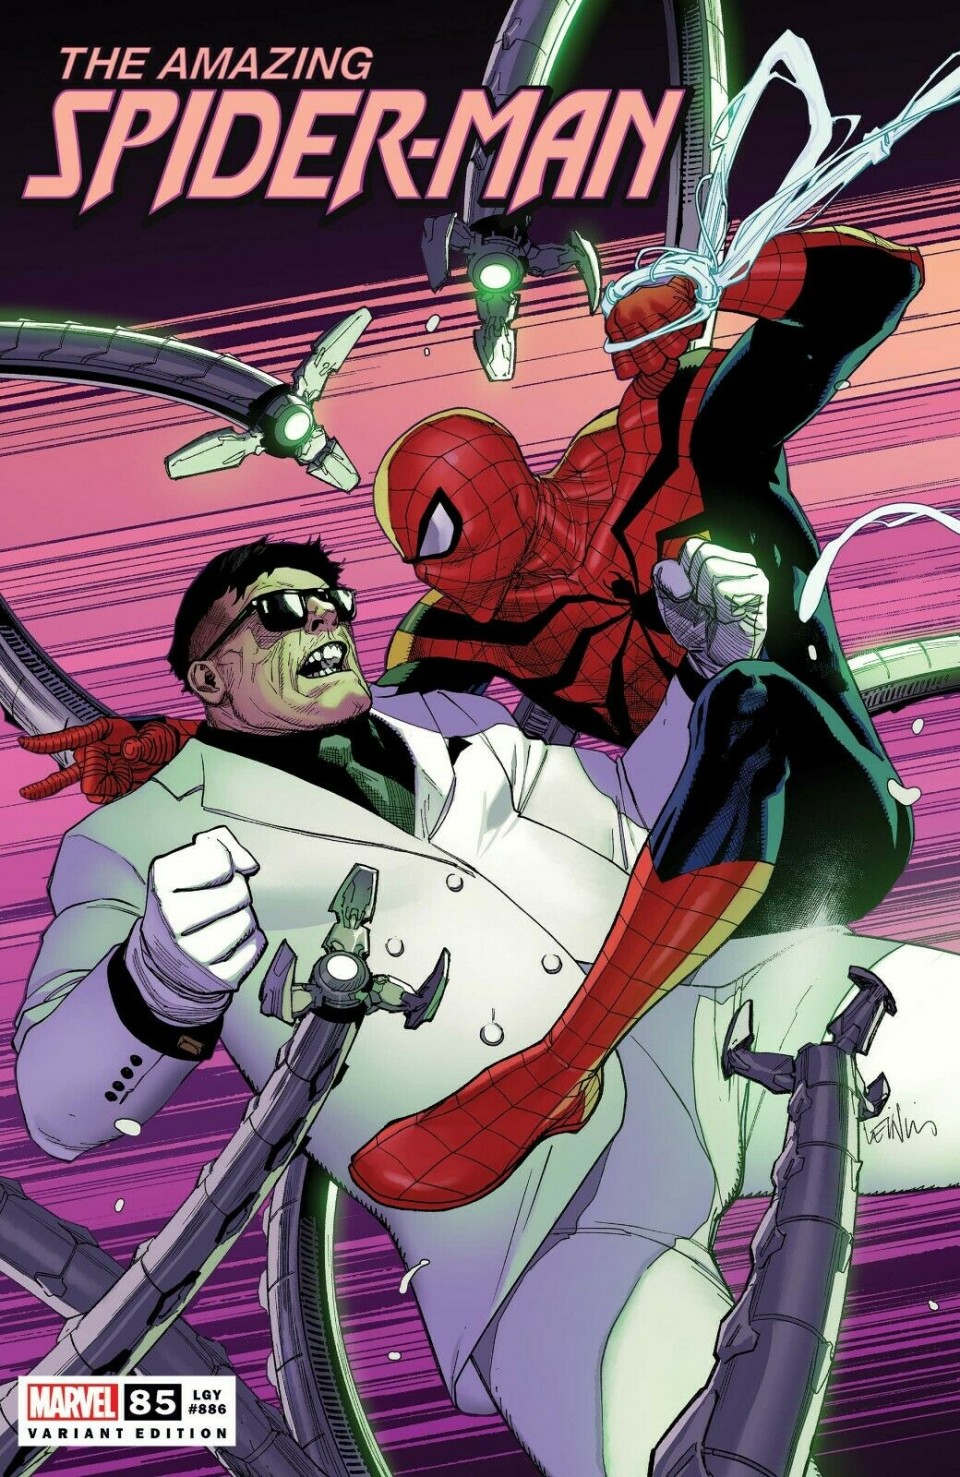 Amazing Spider-Man #39 (2018)